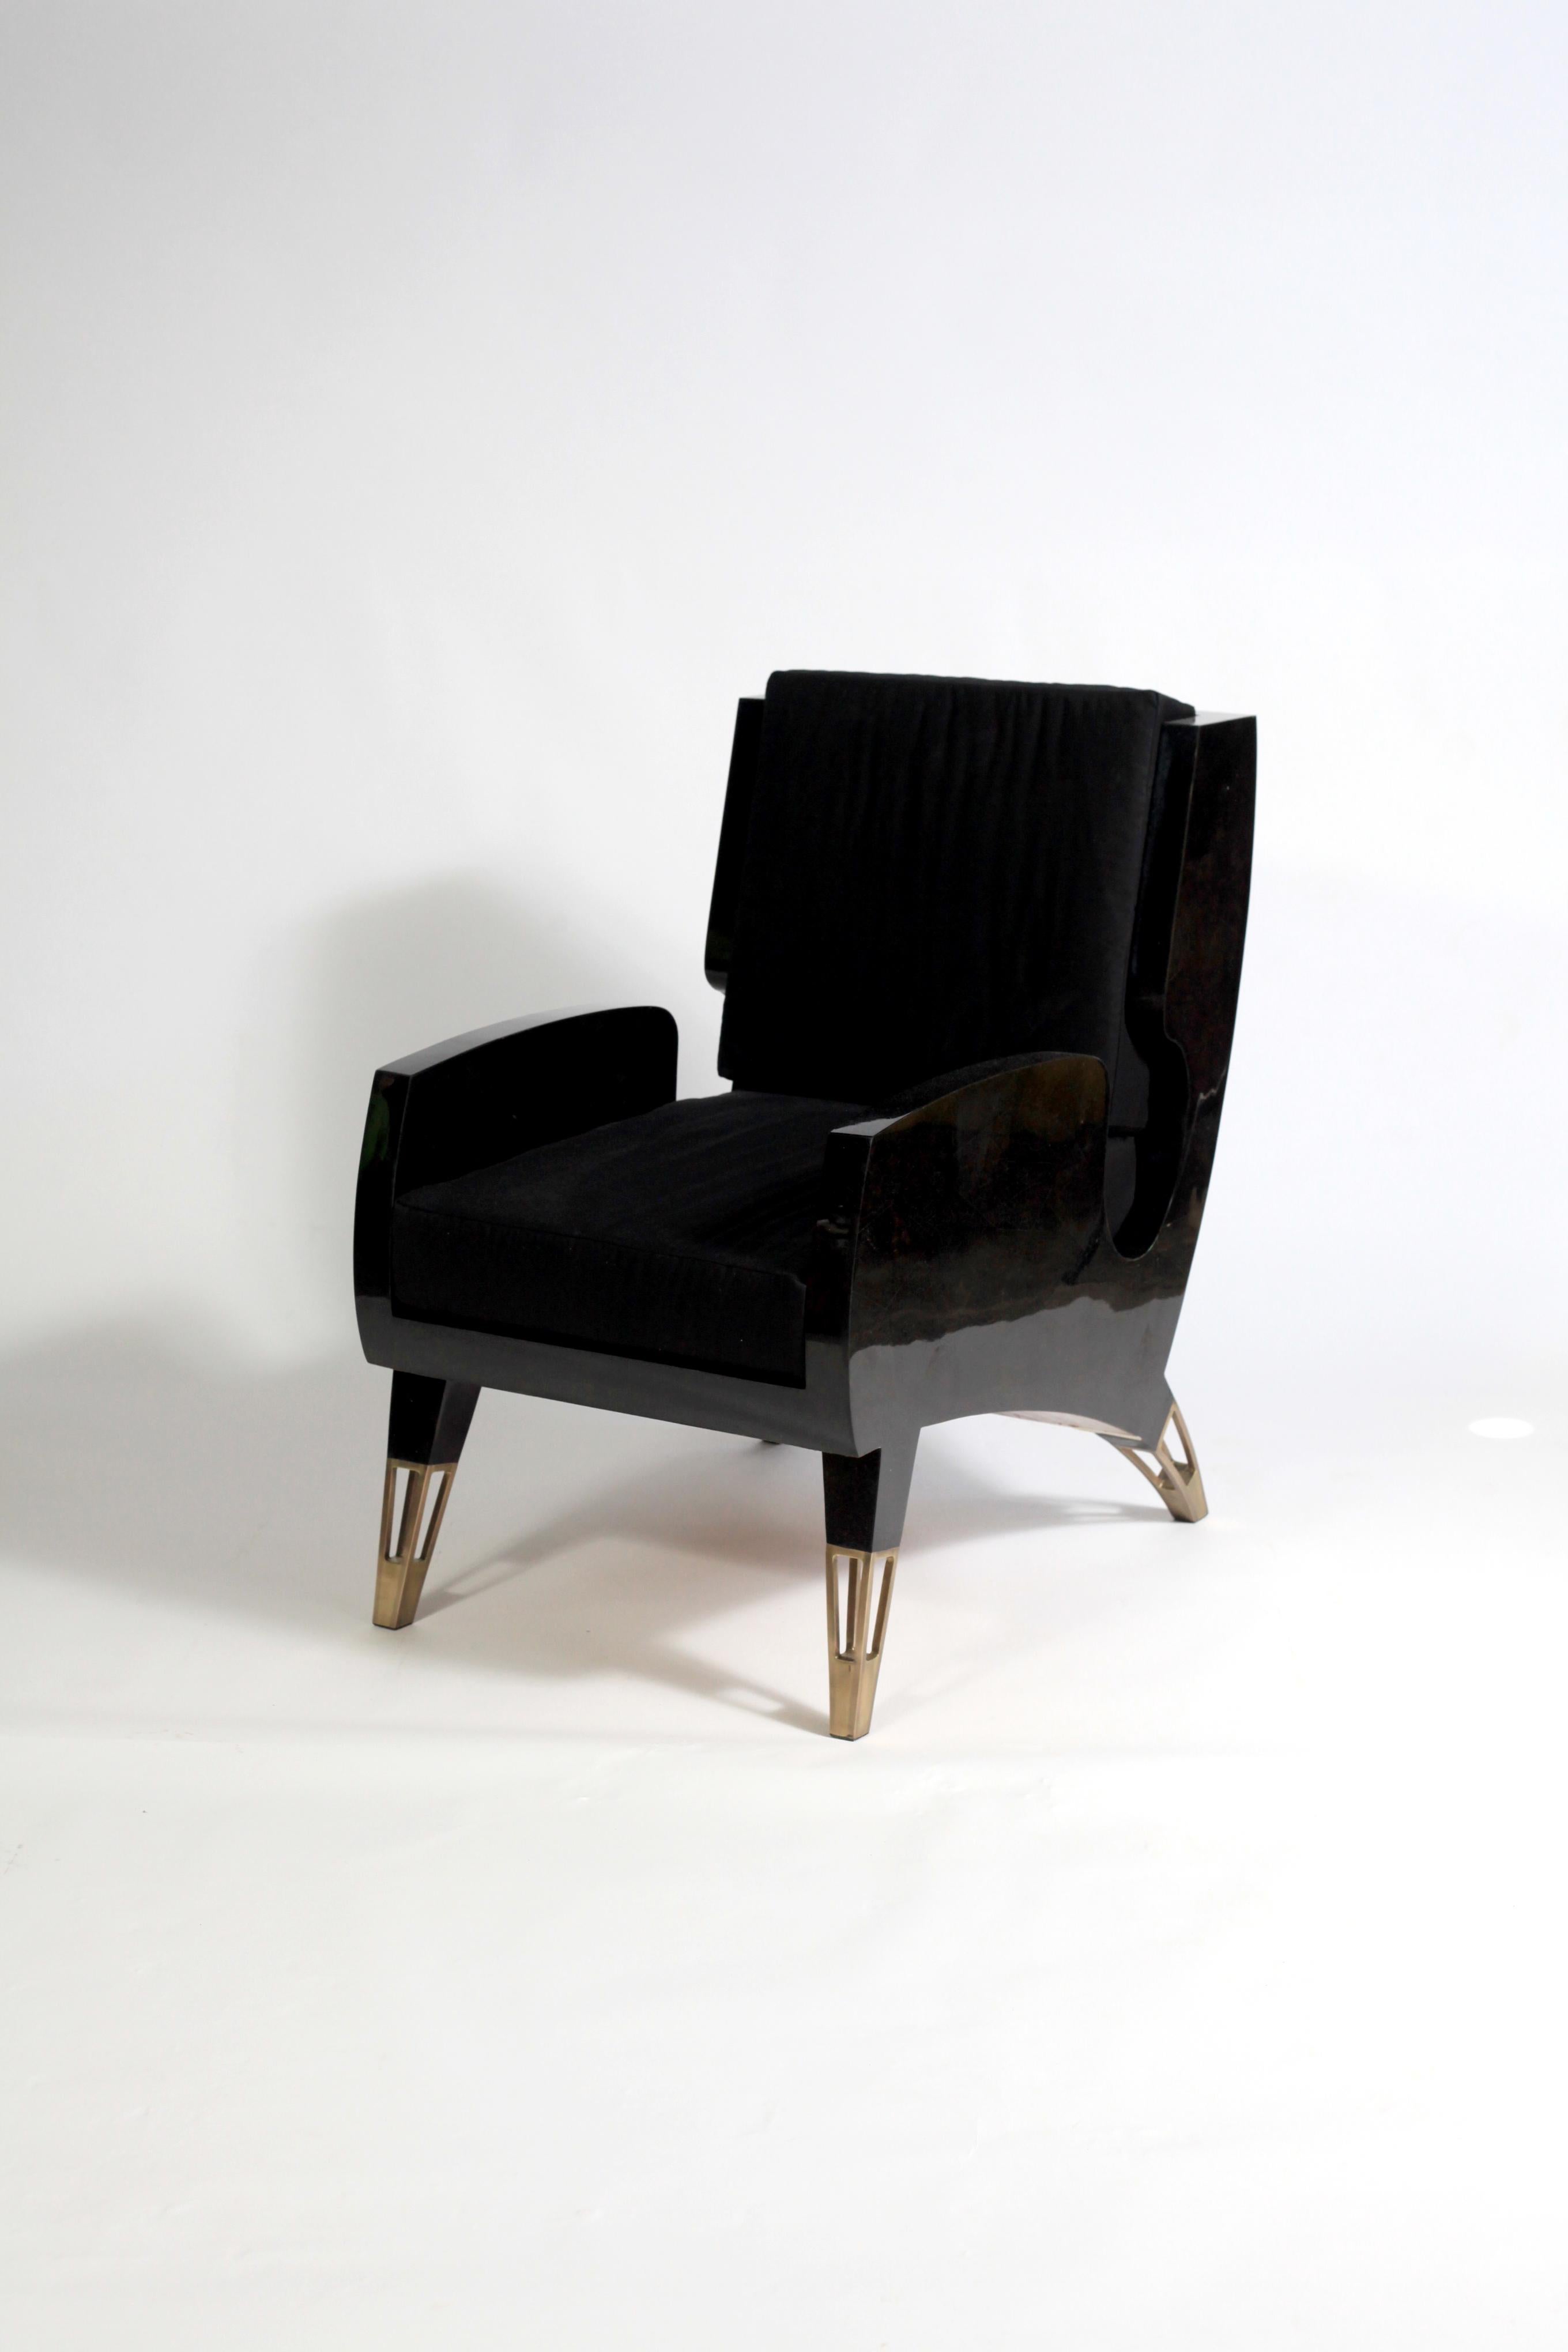 Der Saint Germain ist ein raffinierter Sessel in einer stilvollen Midcentury-Form, der für ein modernes Zuhause entworfen wurde. Perfekt für ein Gespräch. Dieses Stück ist mit schwarzer Federschale eingelegt, was ihm ein elegantes und luxuriöses